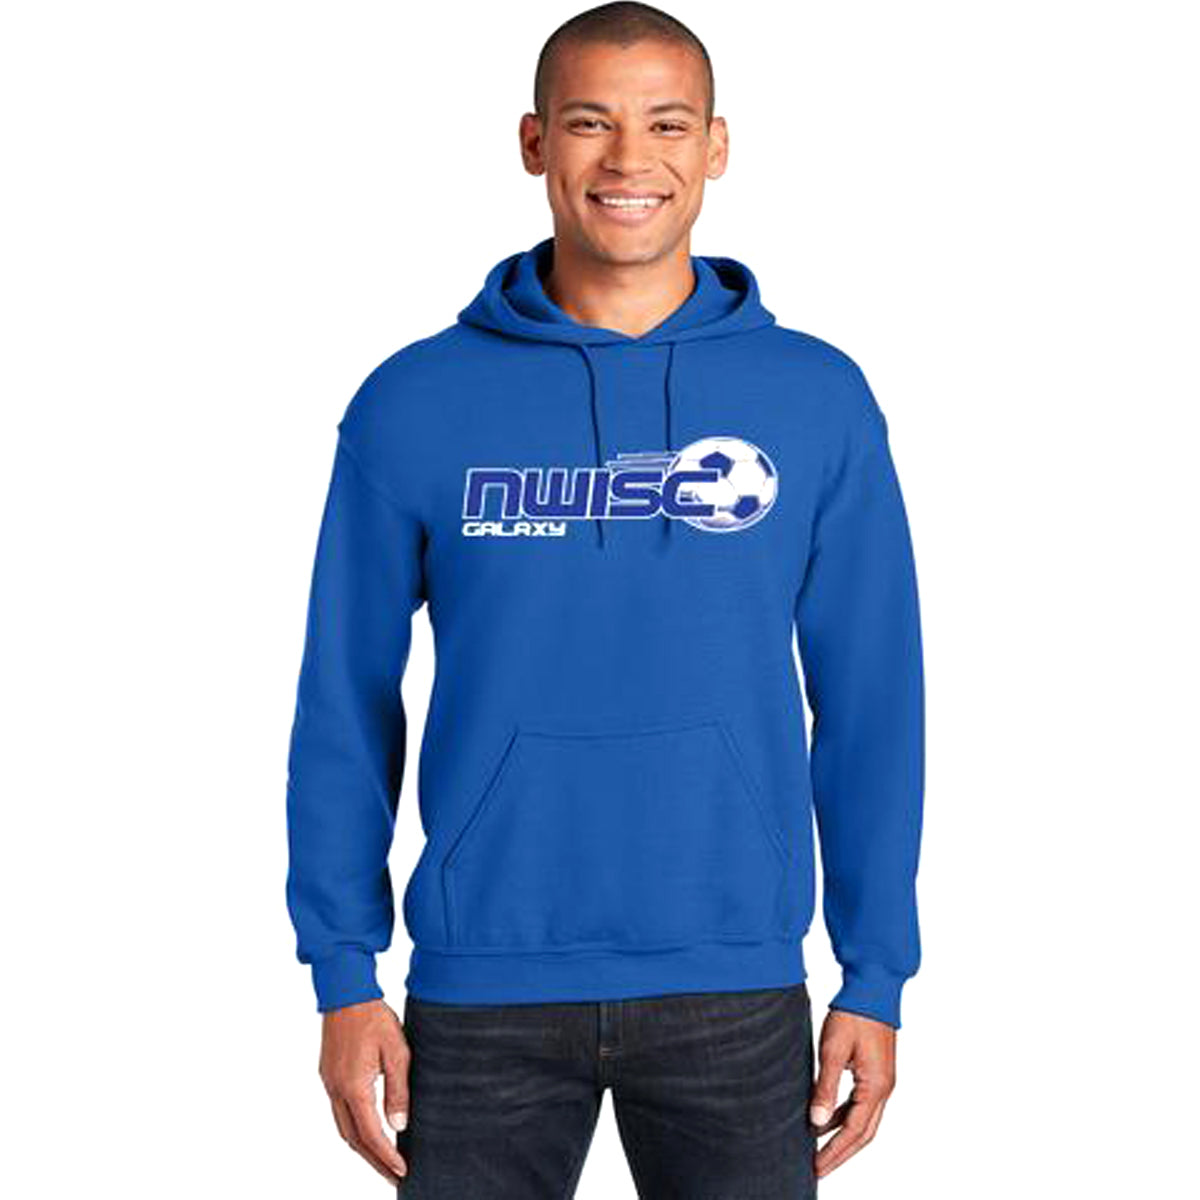 NWISC Galaxy Gildan Hooded Sweatshirt Hooded Sweatshirt Goal Kick Soccer Adult Small 